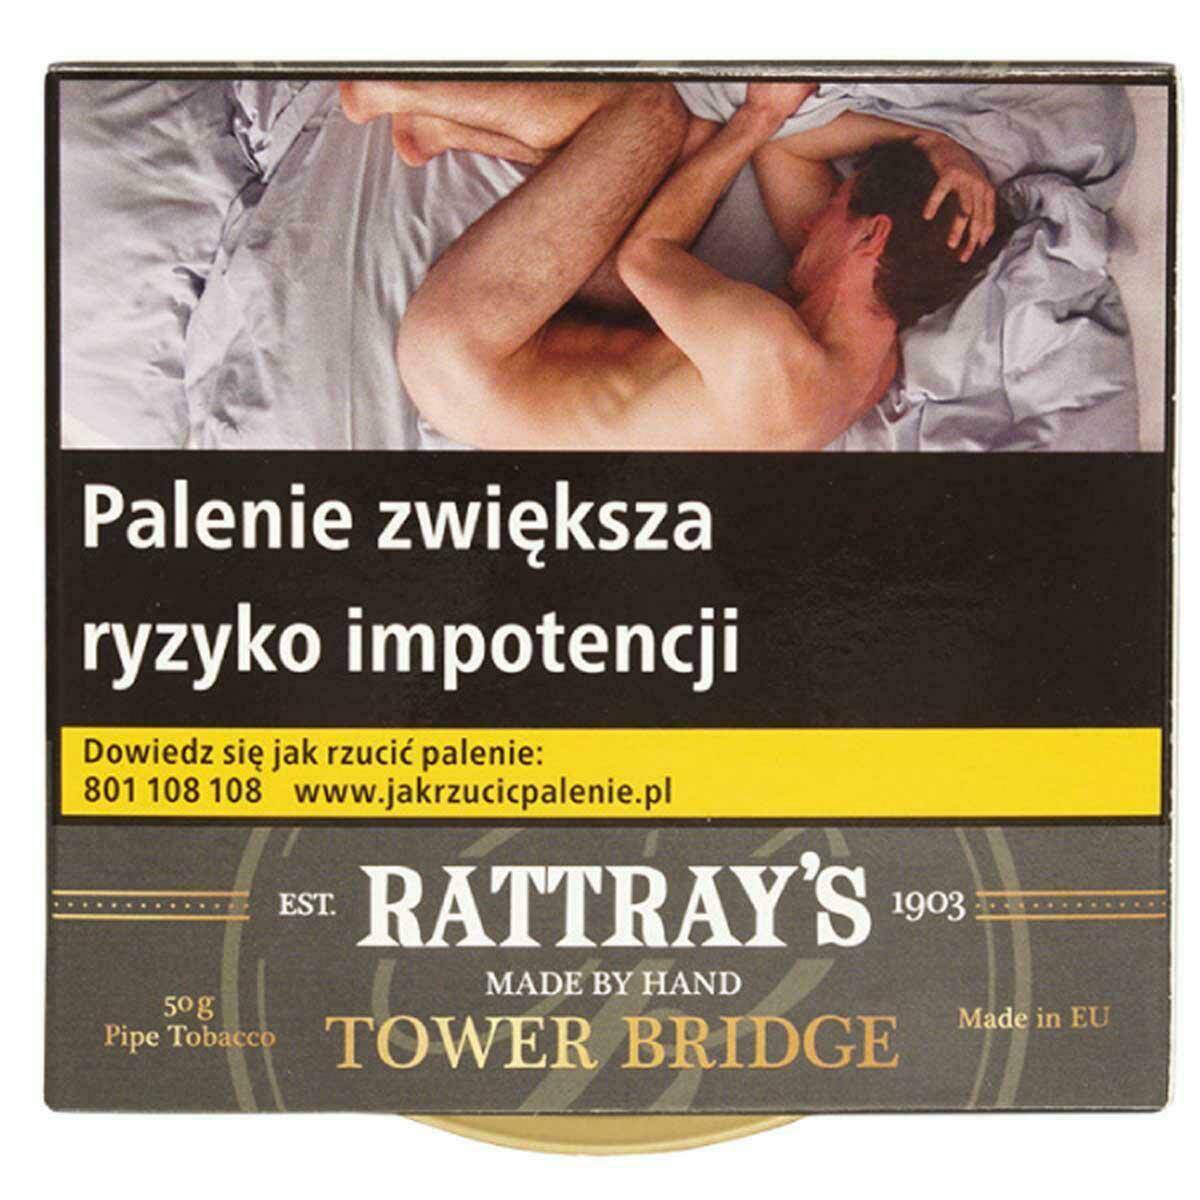 B23-Tytoń Rattray Tower Bridge 50g(69,90)